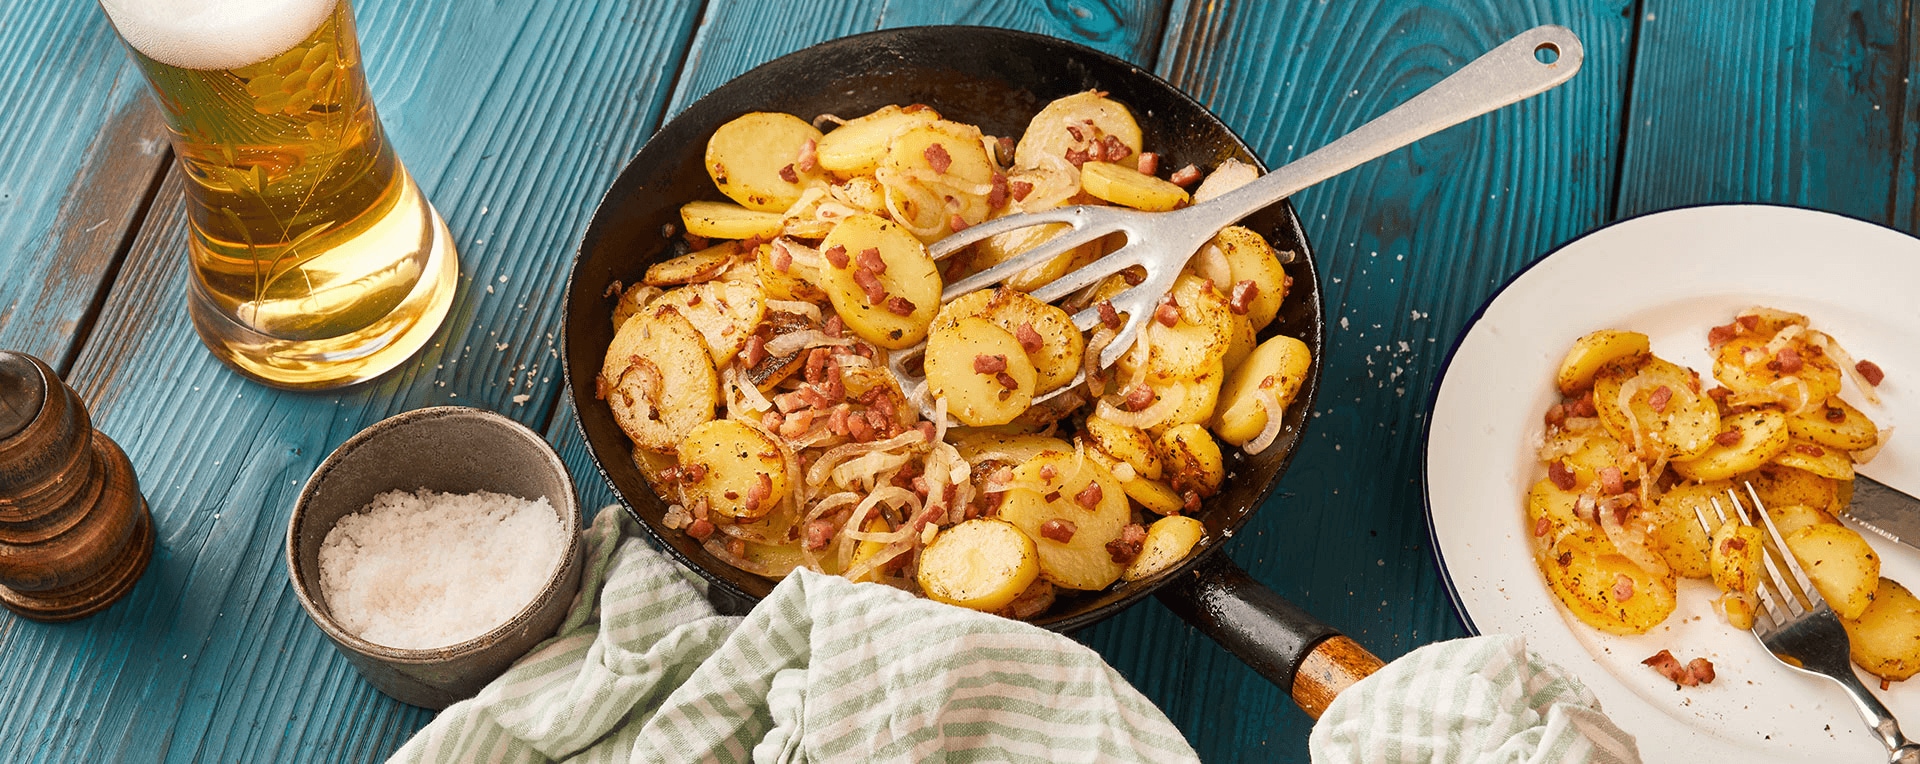 Bratkartoffeln von rohen Kartoffeln